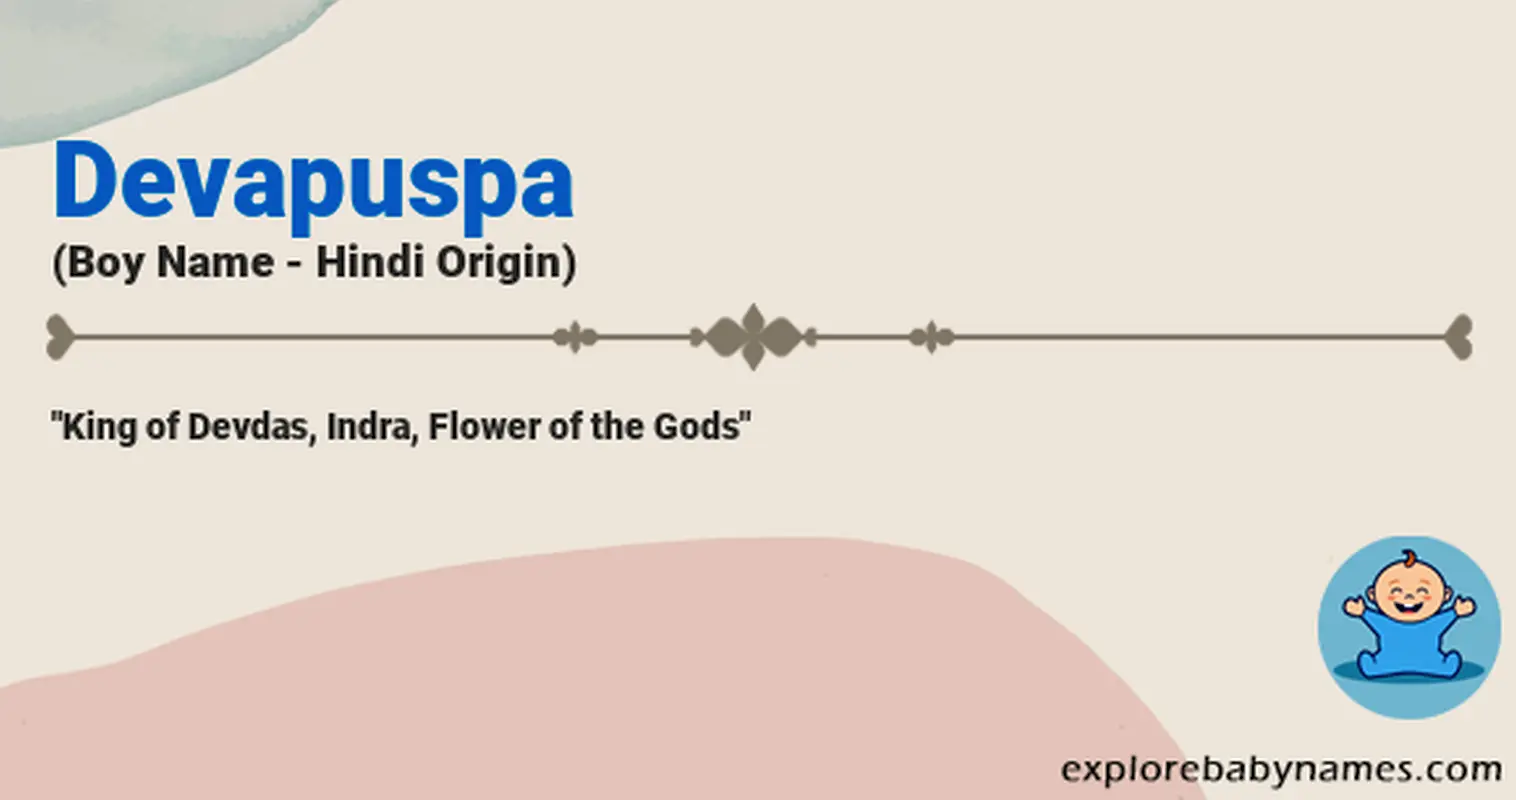 Meaning of Devapuspa